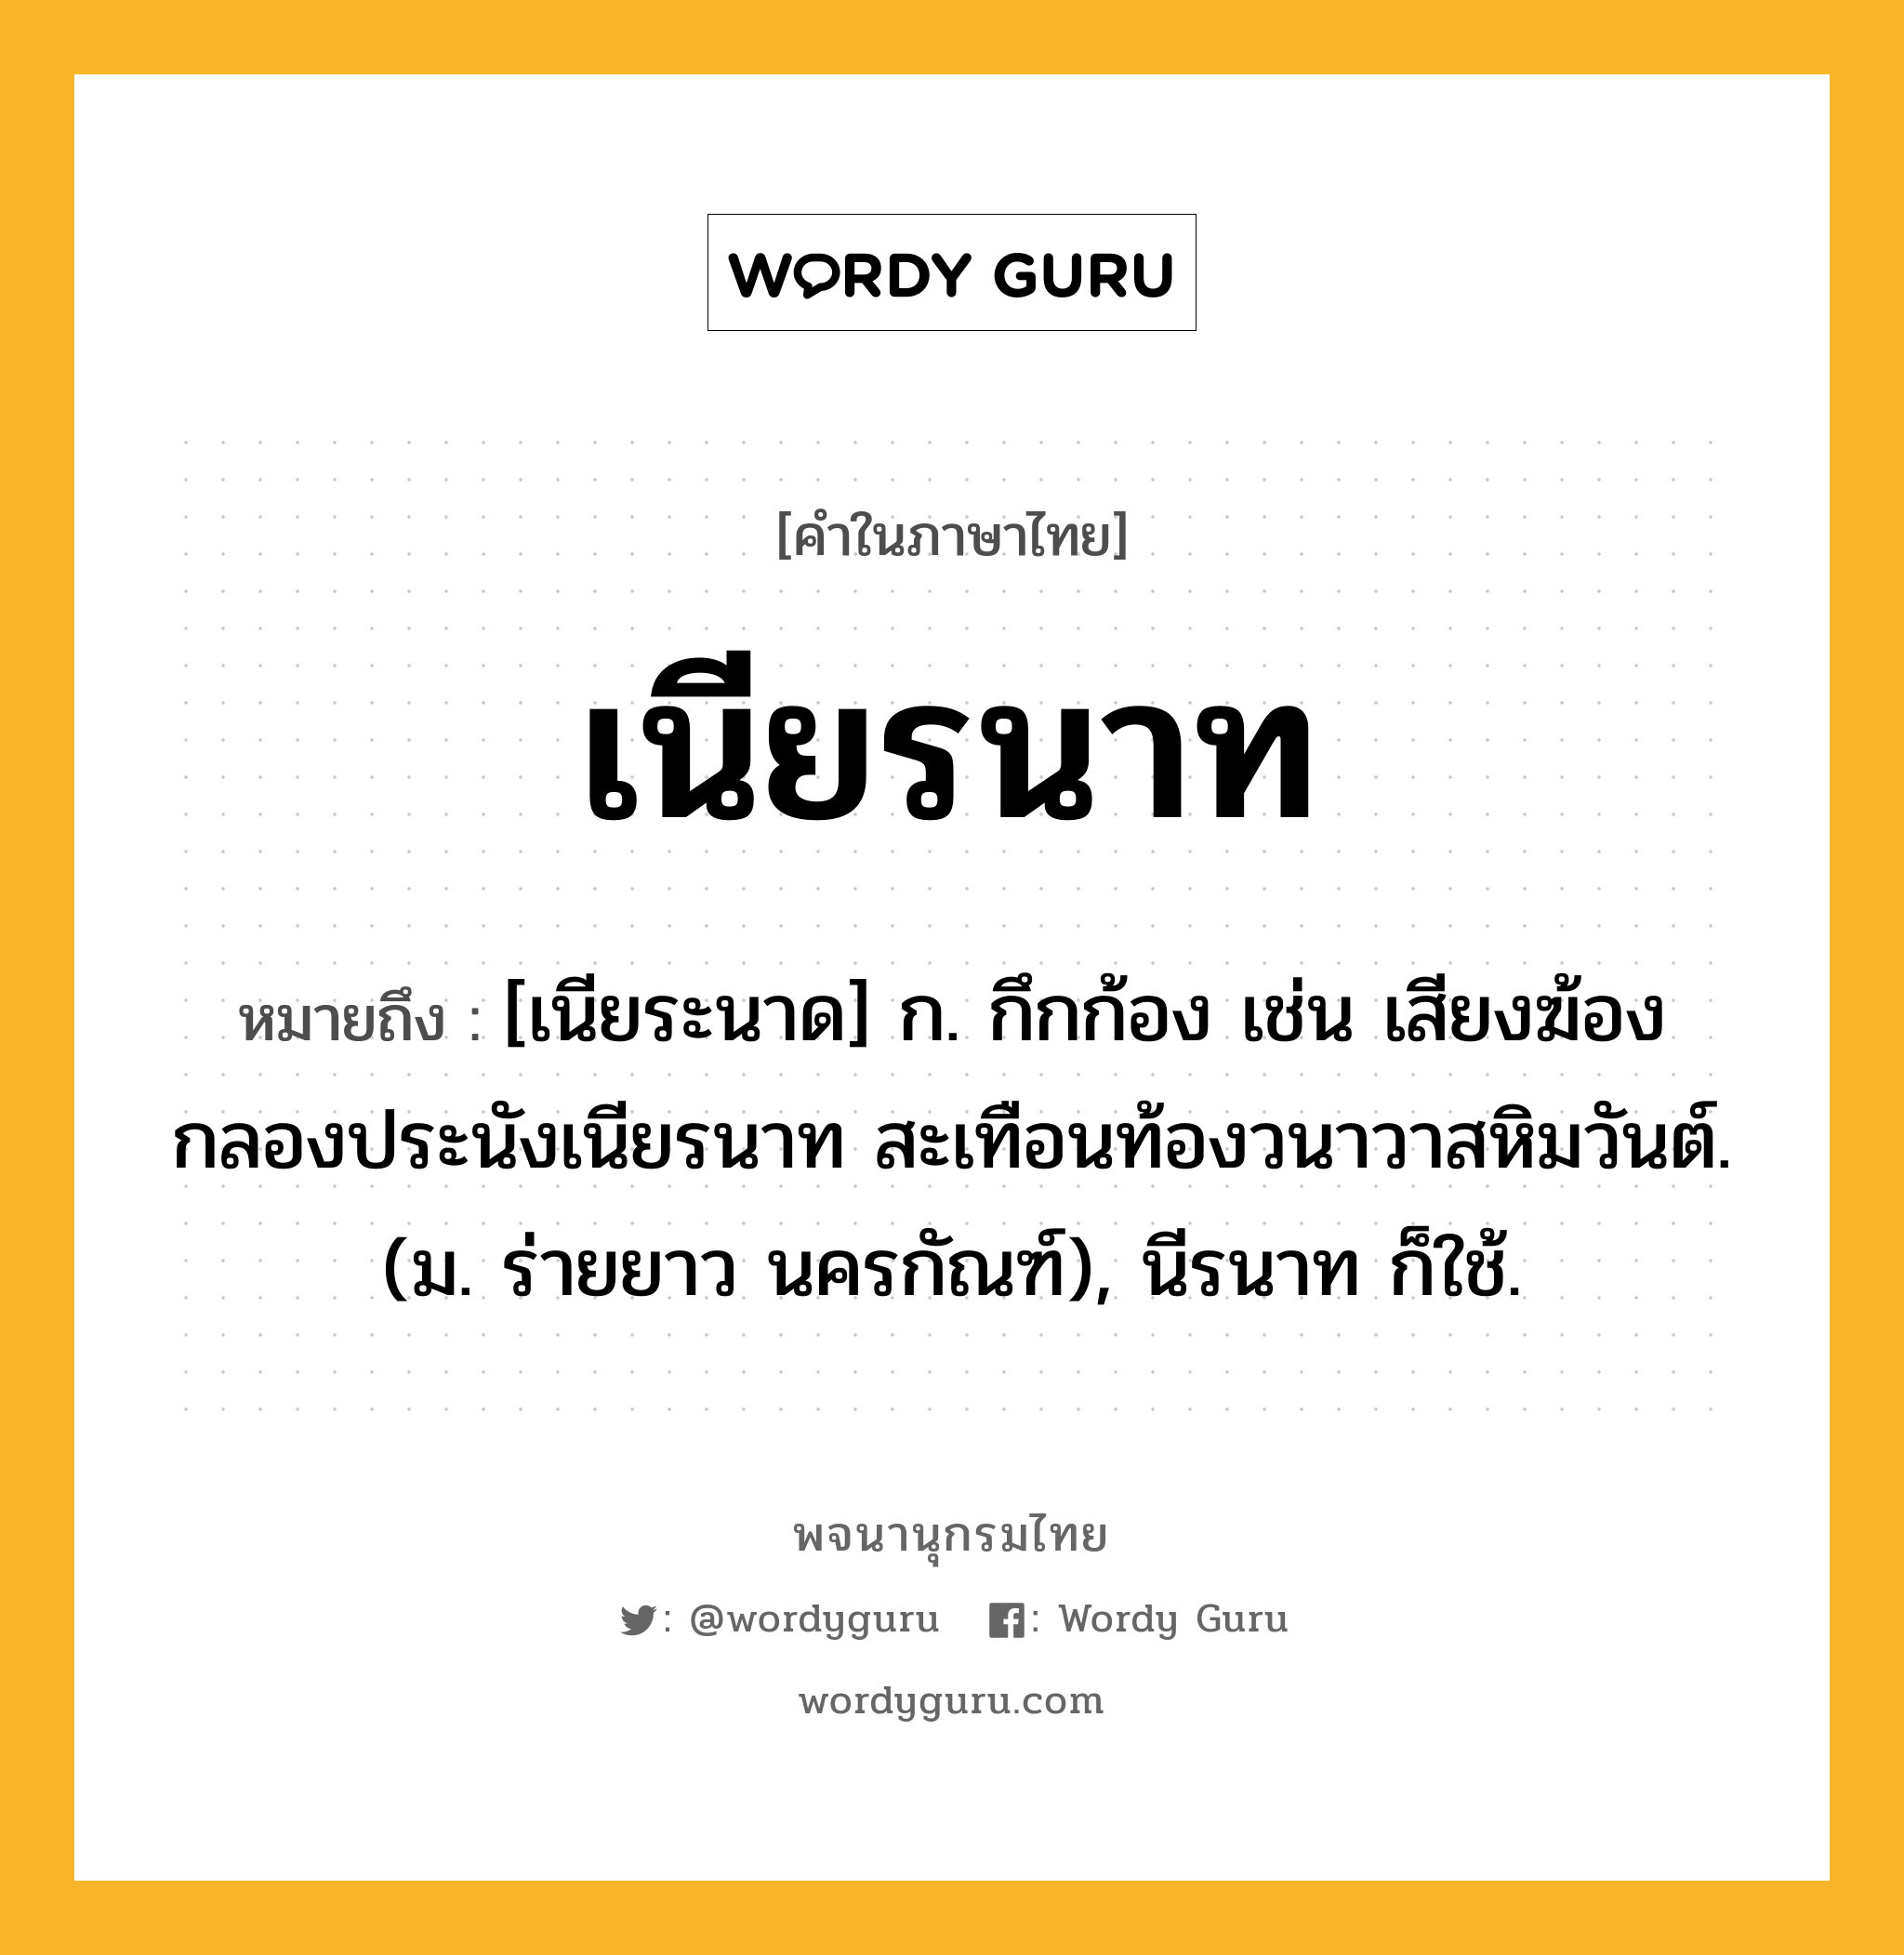 เนียรนาท ความหมาย หมายถึงอะไร?, คำในภาษาไทย เนียรนาท หมายถึง [เนียระนาด] ก. กึกก้อง เช่น เสียงฆ้องกลองประนังเนียรนาท สะเทือนท้องวนาวาสหิมวันต์. (ม. ร่ายยาว นครกัณฑ์), นีรนาท ก็ใช้.